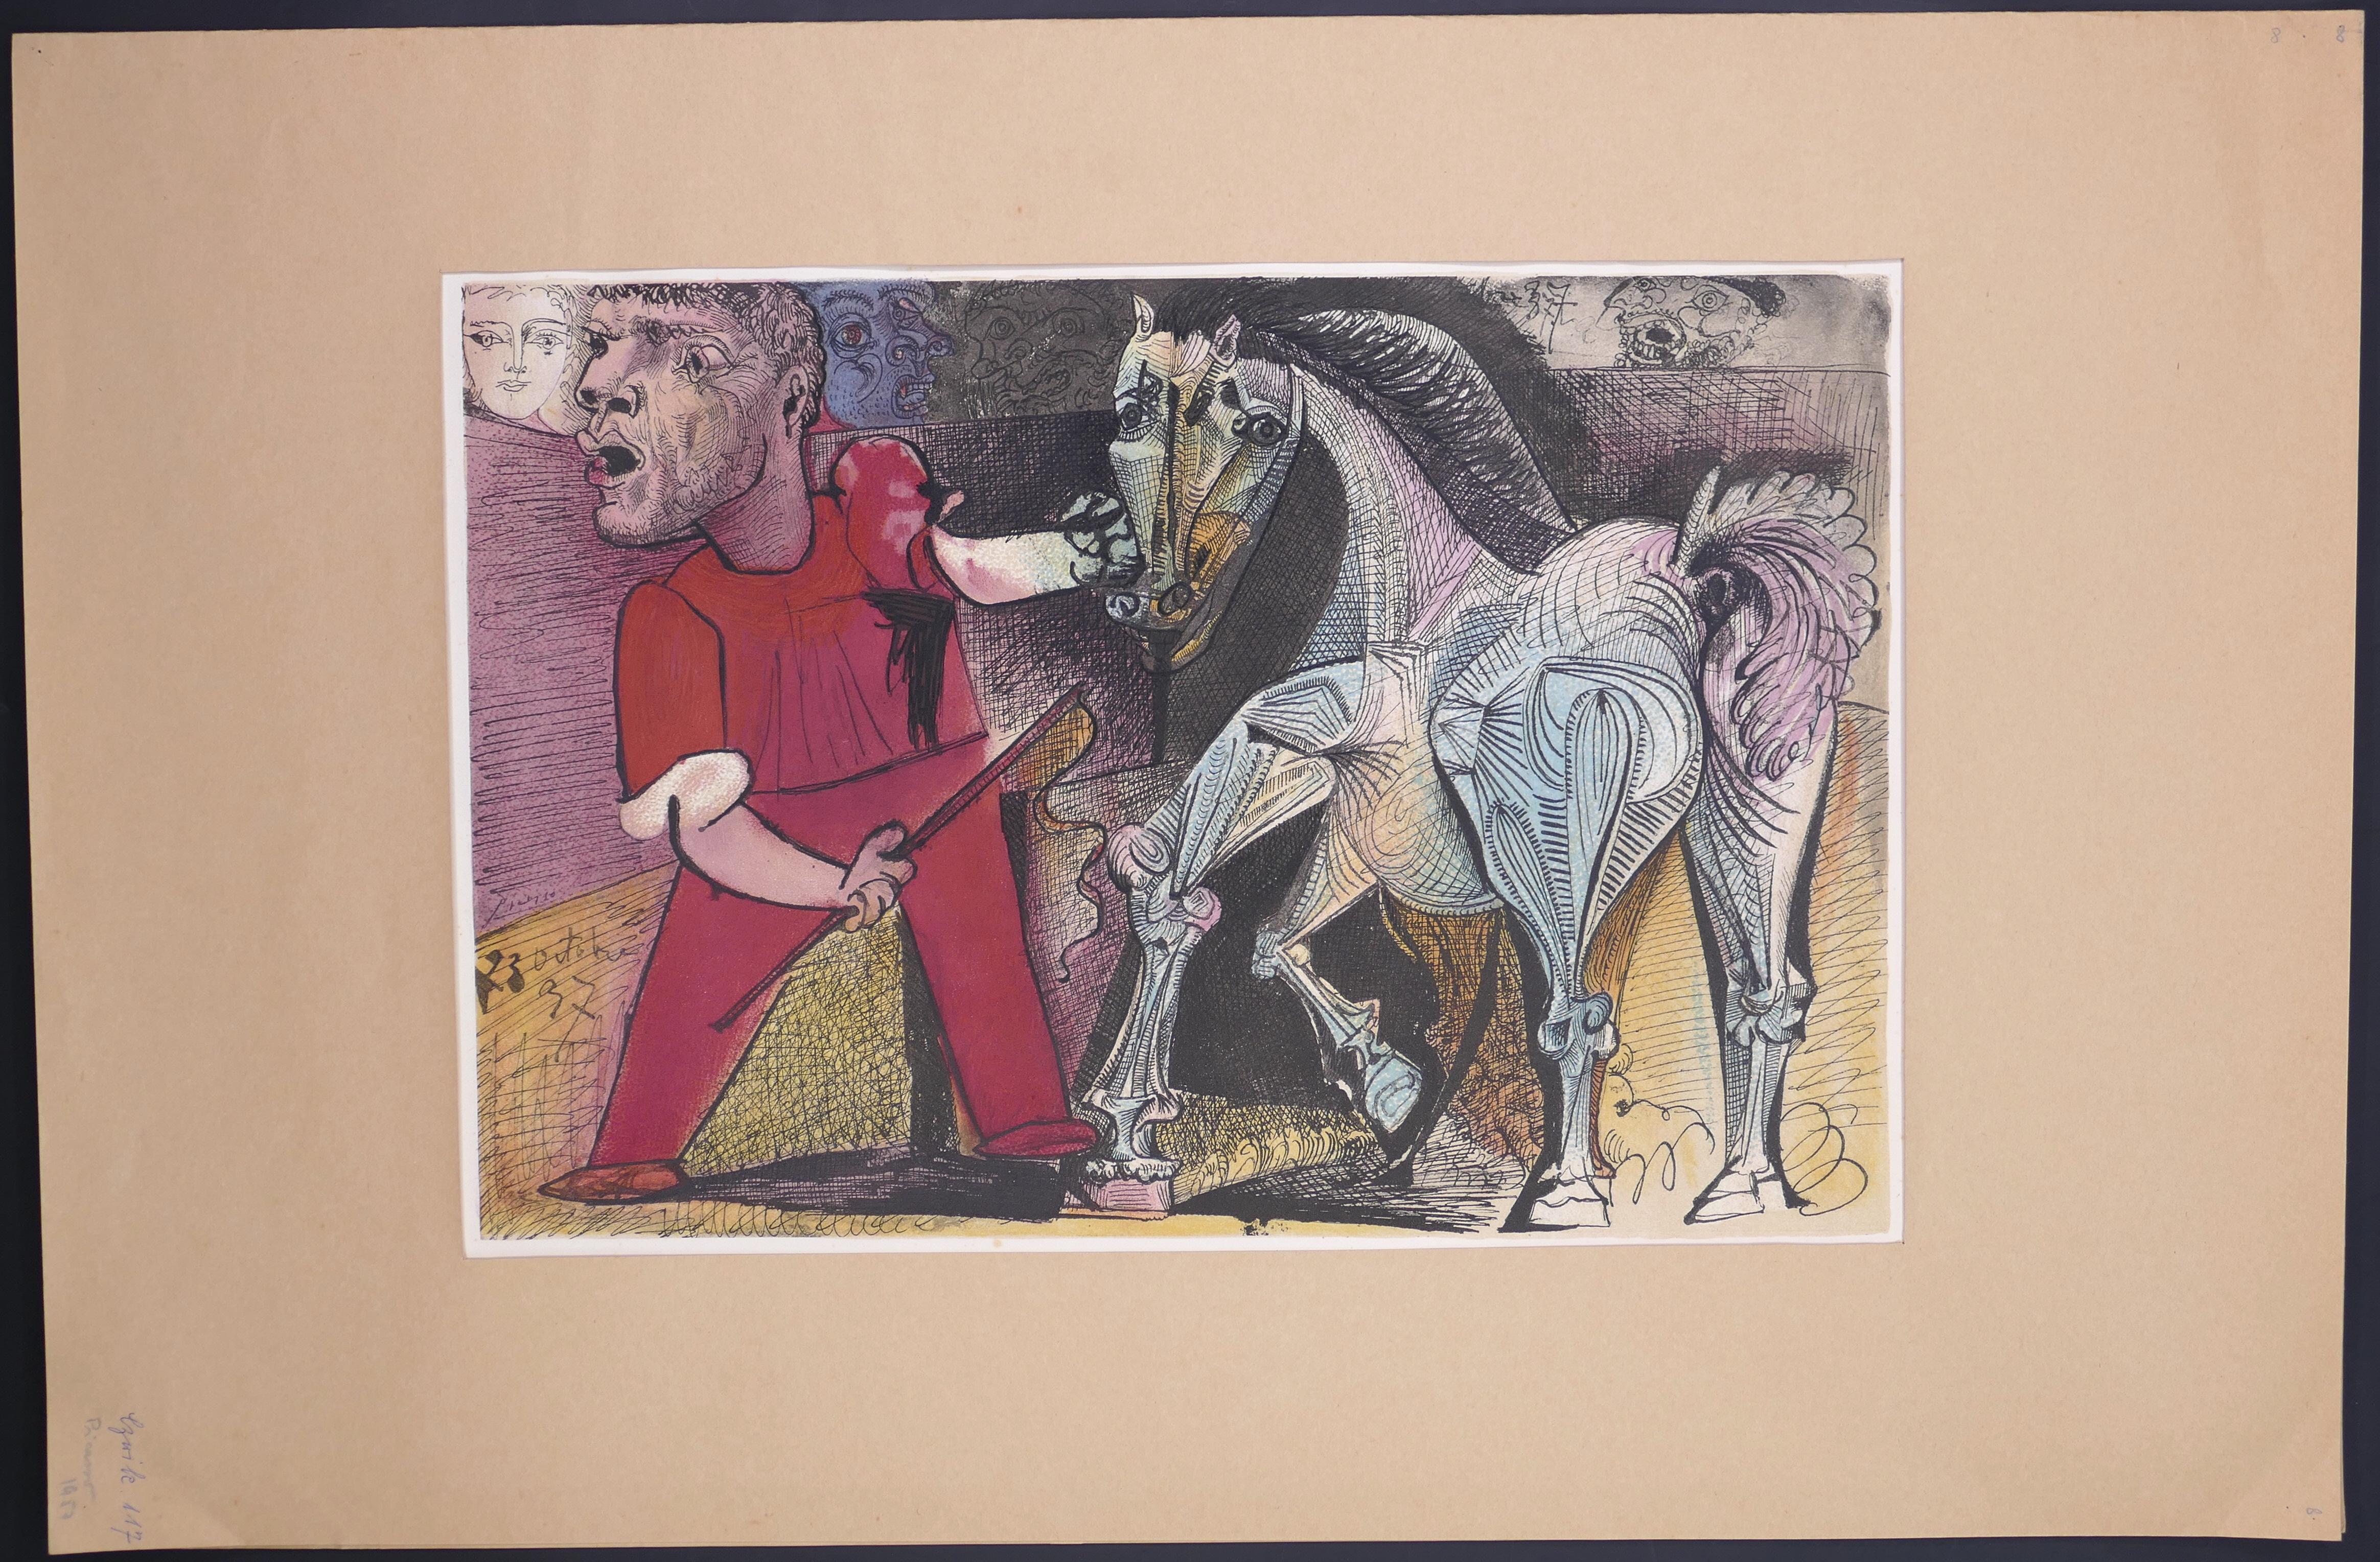 Affiche d'exposition vintage d'après Picasso à Arles, 1957 - Print de (after) Pablo Picasso